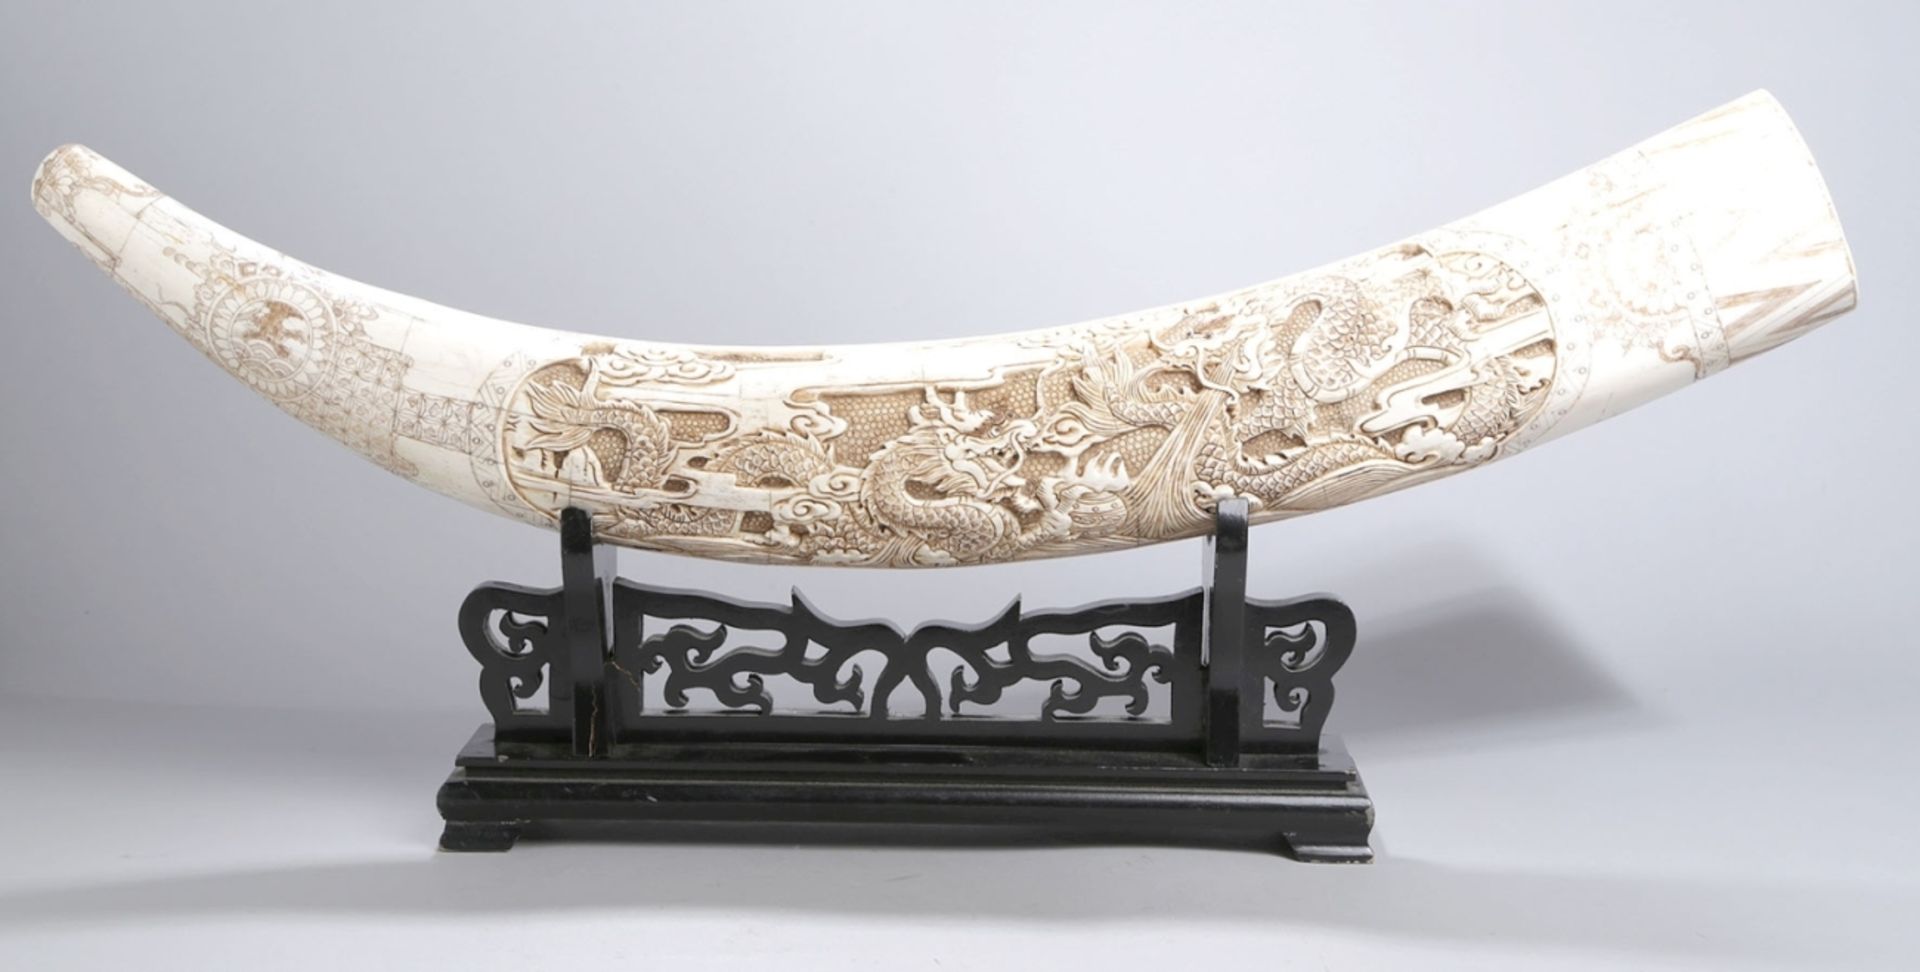 Bein-Schnitzerei, China, 20. Jh., große, gebogte Zahnform, gefertigt aus zusammengesetztenPlatt